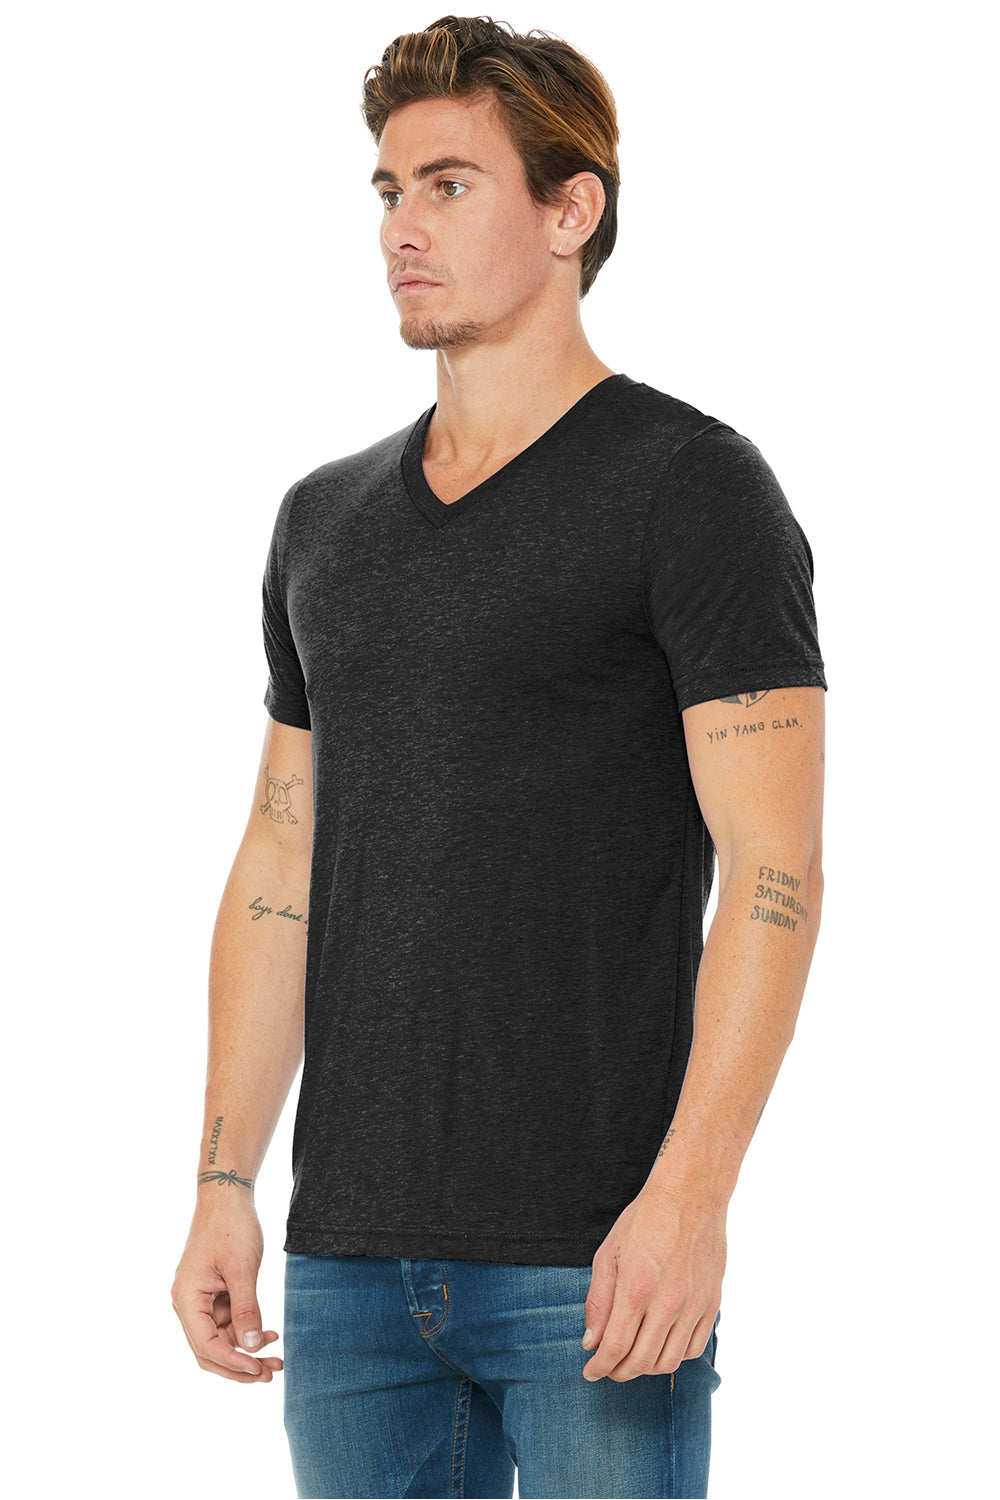 Bella + Canvas BC3415/3415C/3415 Mens Short Sleeve V-Neck T-Shirt Charcoal Black Model 3Q